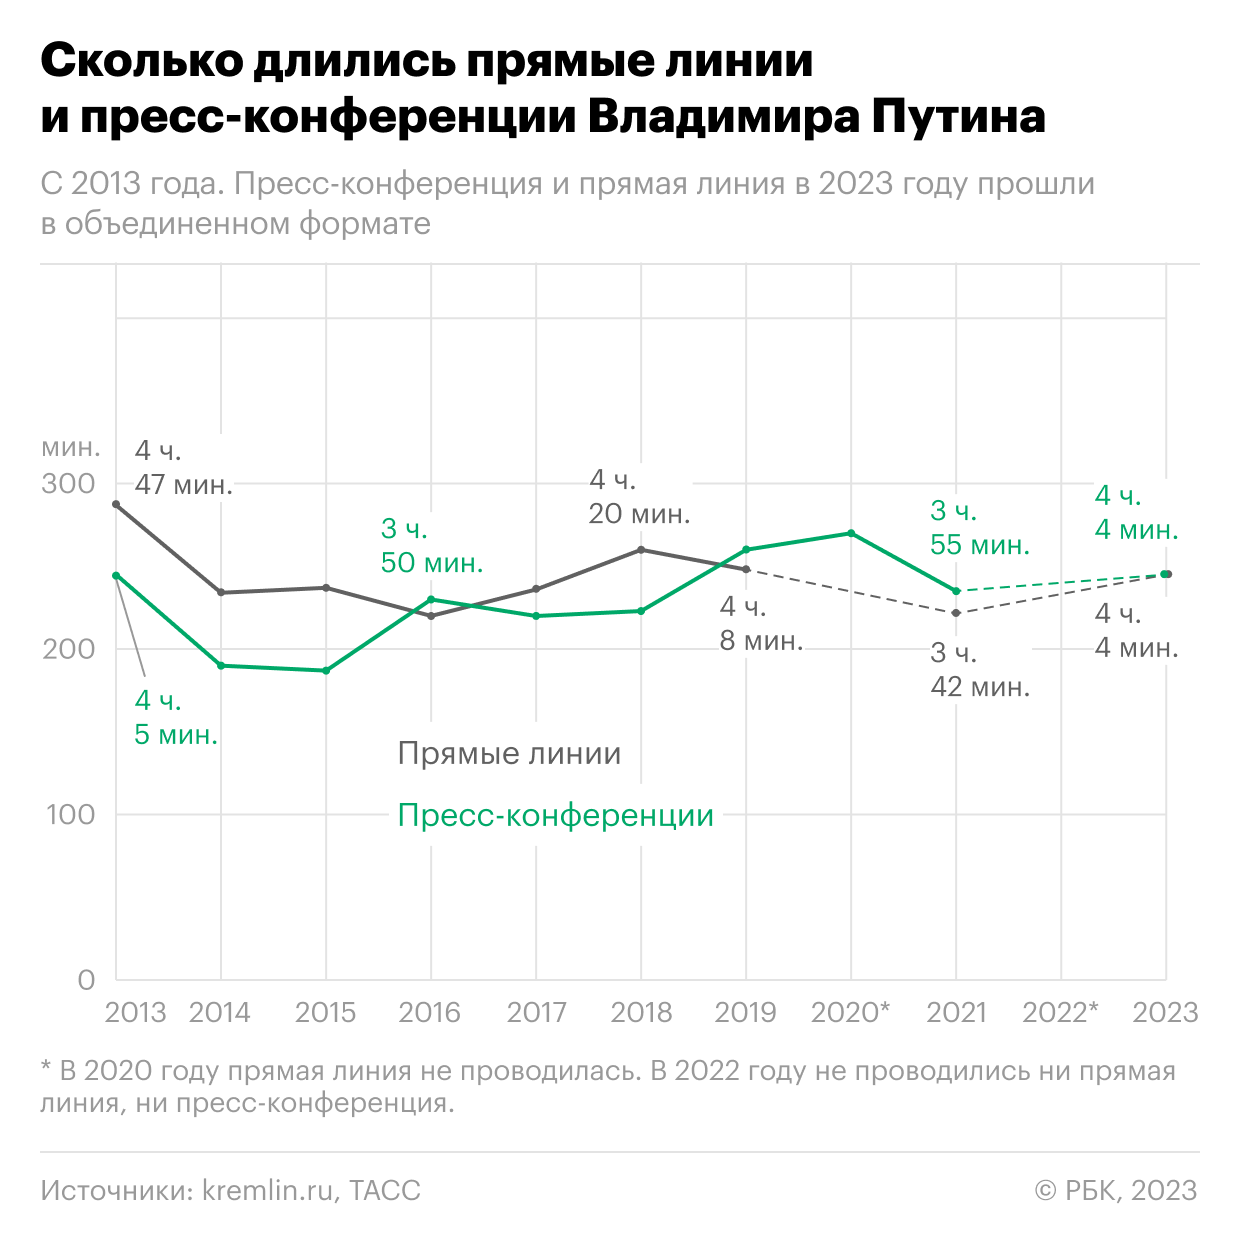 Сколько длились пресс-конференции и прямые линии Путина. Инфографика